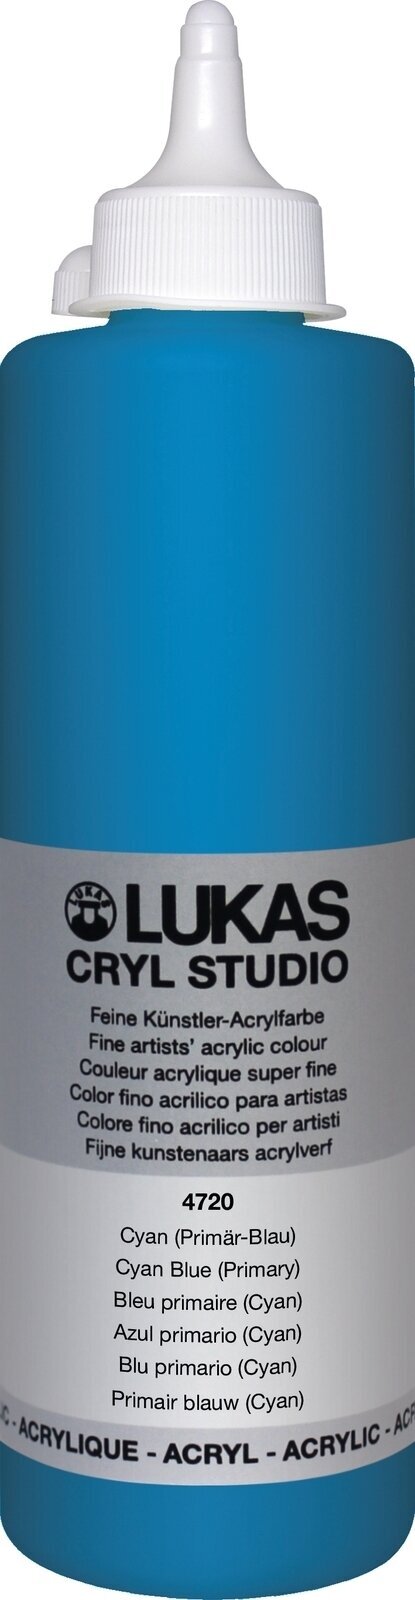 Levně Lukas Cryl Studio Akrylová barva 500 ml Cyan Blue (Primary)